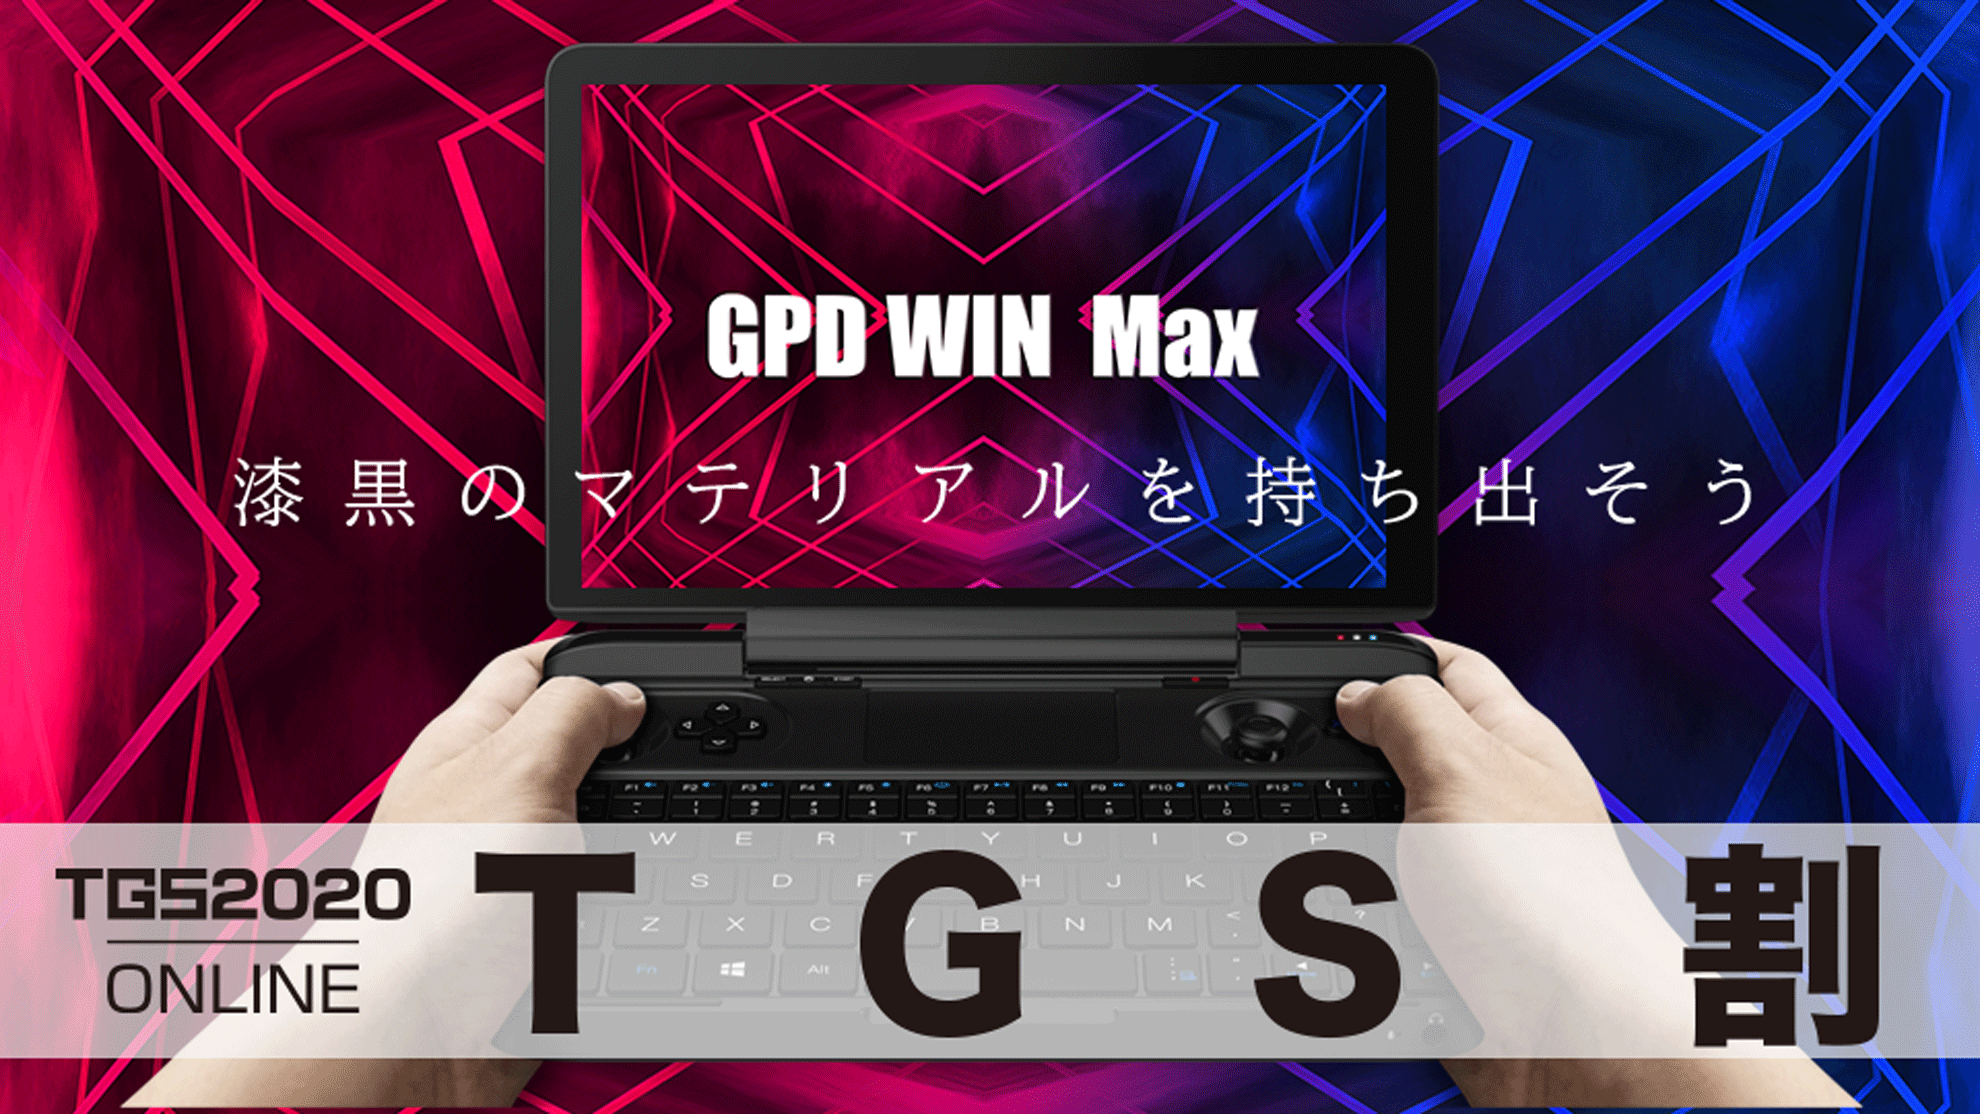 持ち歩けるゲーミングPCの最新モデル『GPD WIN Max』が 9/23から期間 